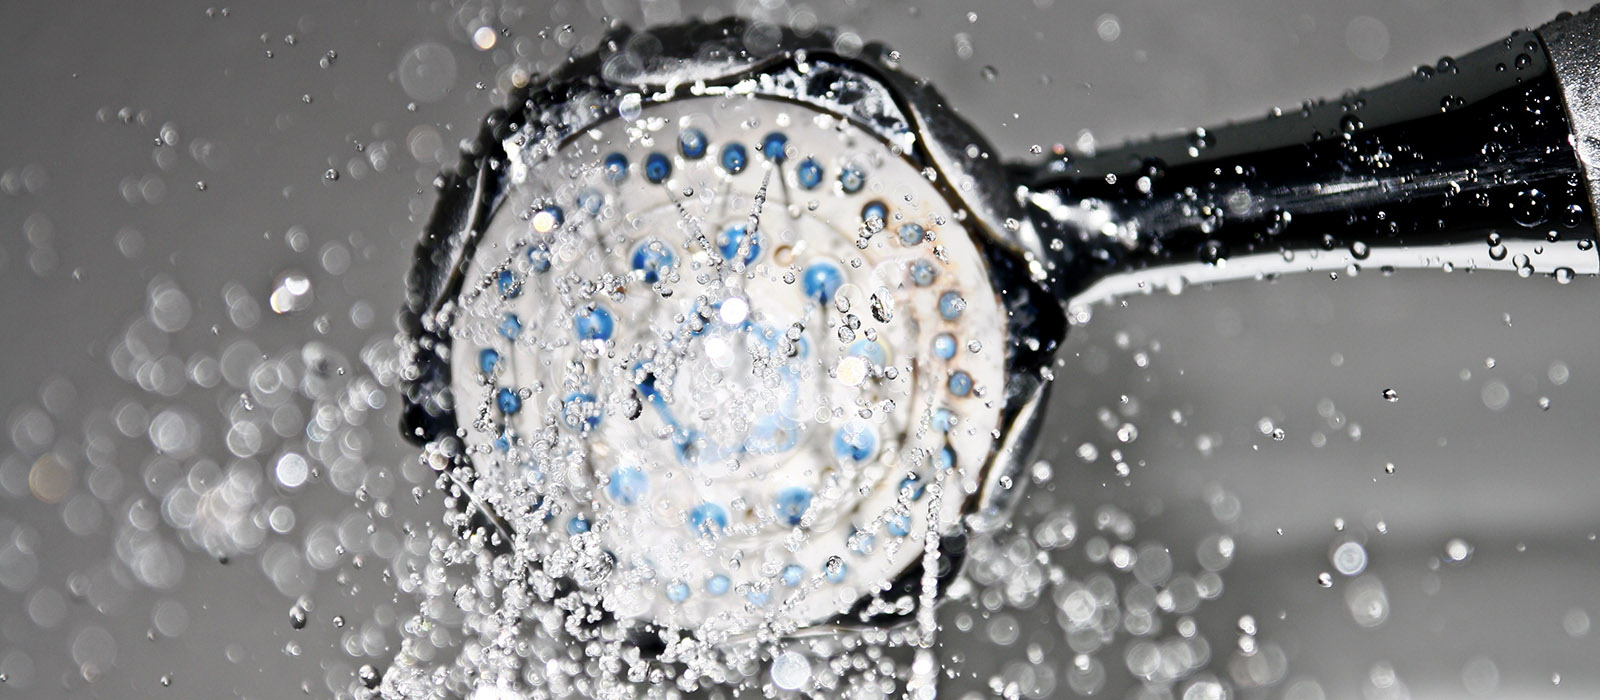 En närbild på ett duschmunstycke som det sprutar vatten ifrån.